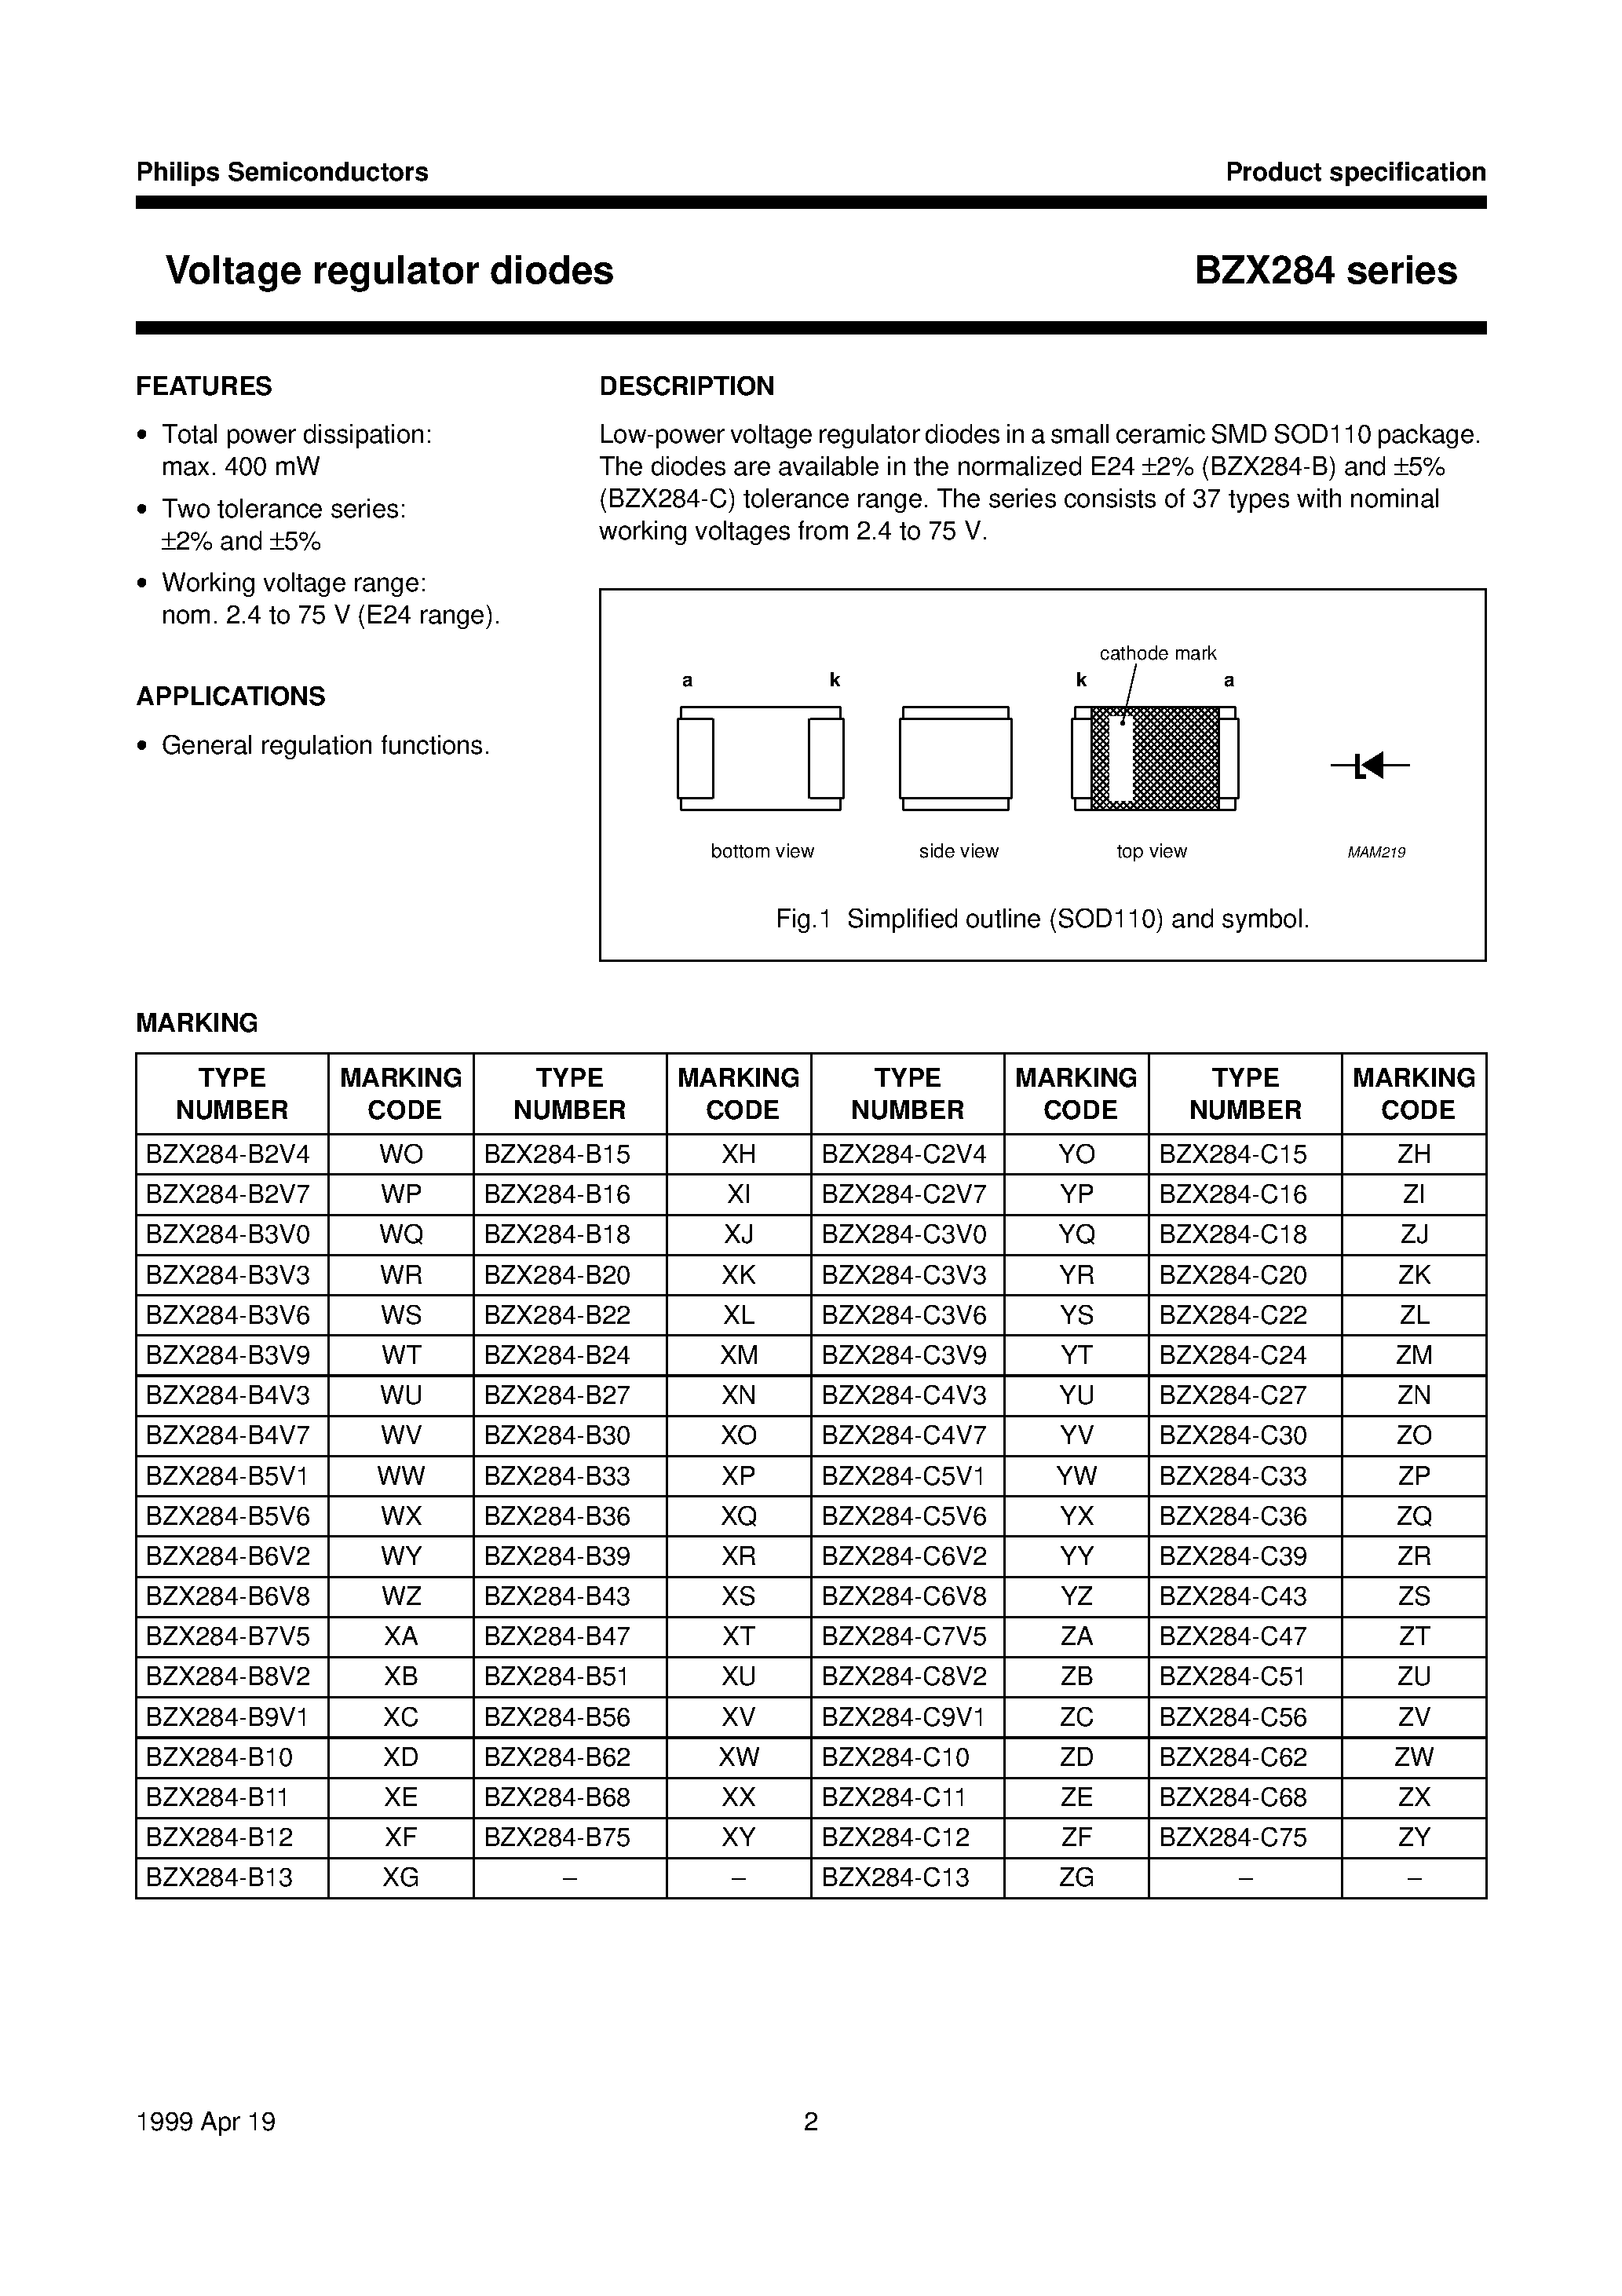 Datasheet BZX284-B10 - Voltage regulator diodes page 2